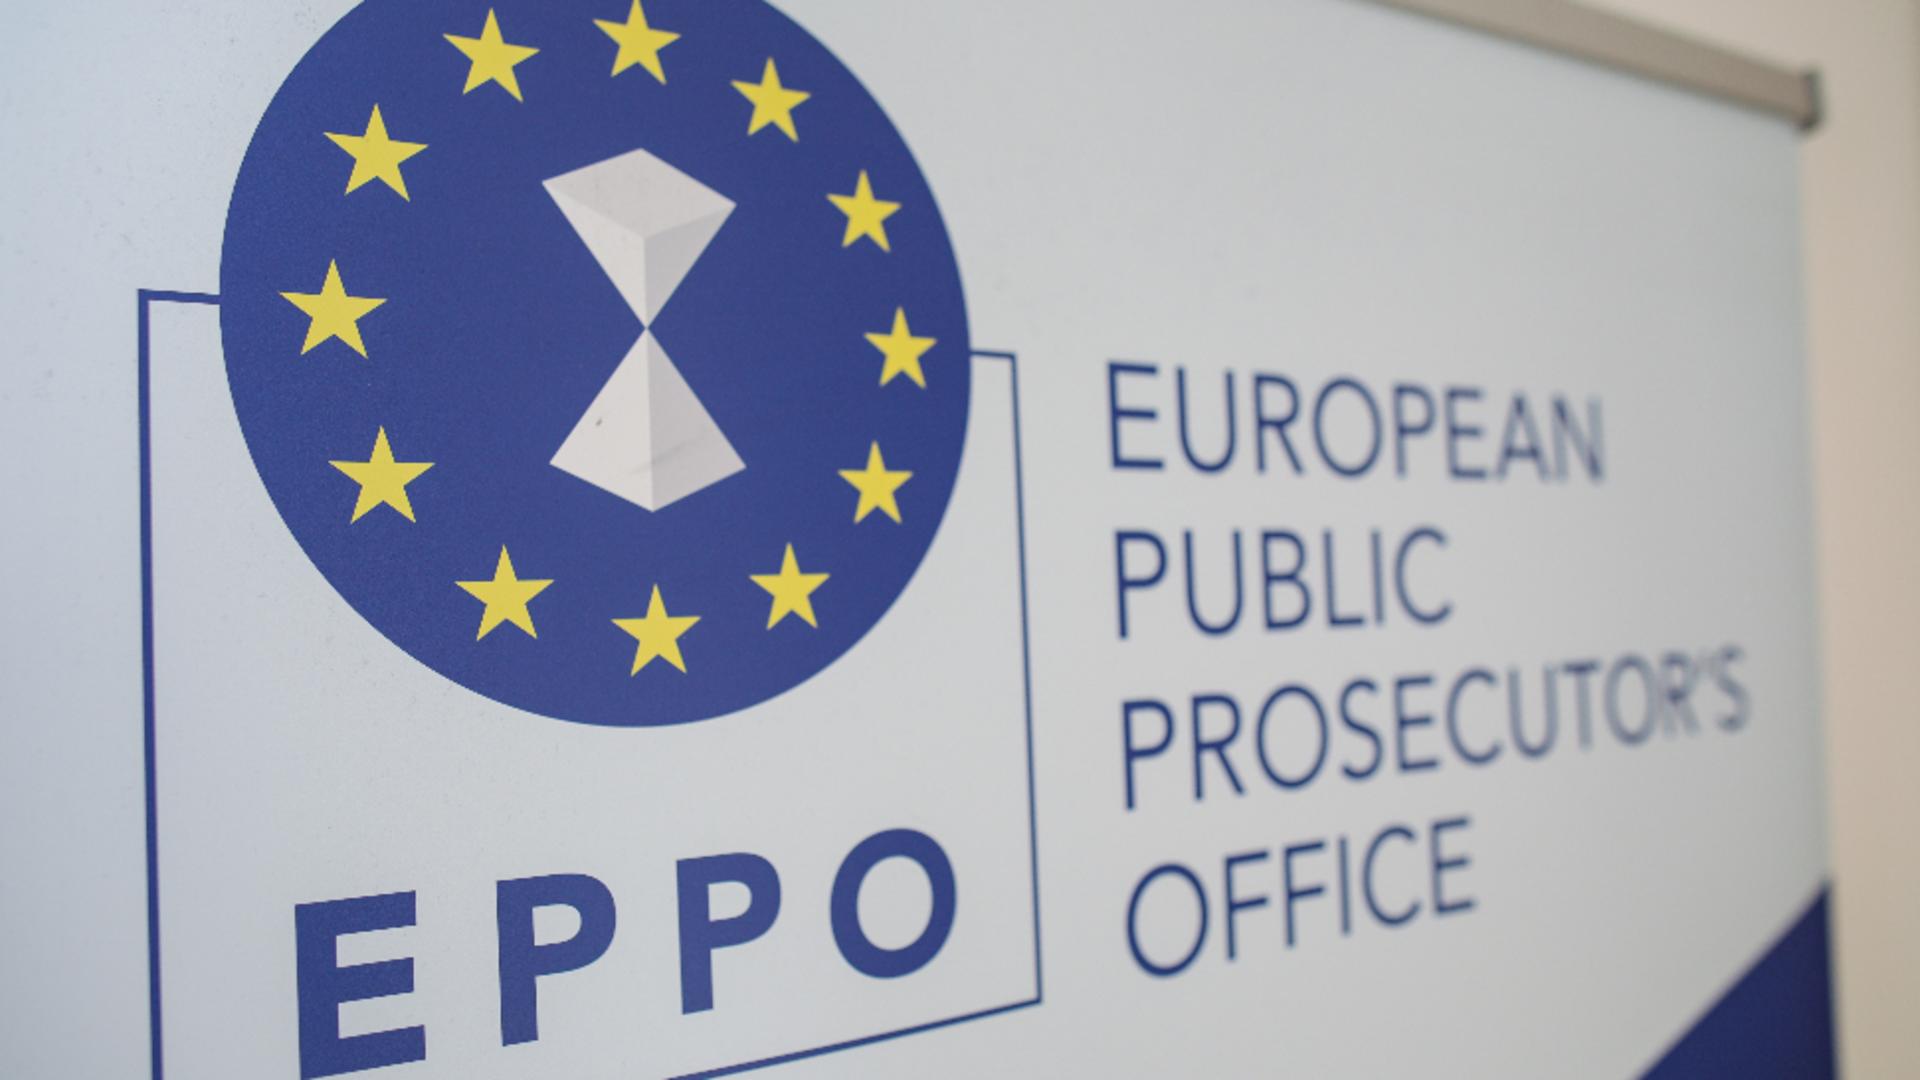 Parchetul European, percheziții la Arad, într-o anchetă privind o posibilă fraudă de 3 milioane de euro din fonduri europene